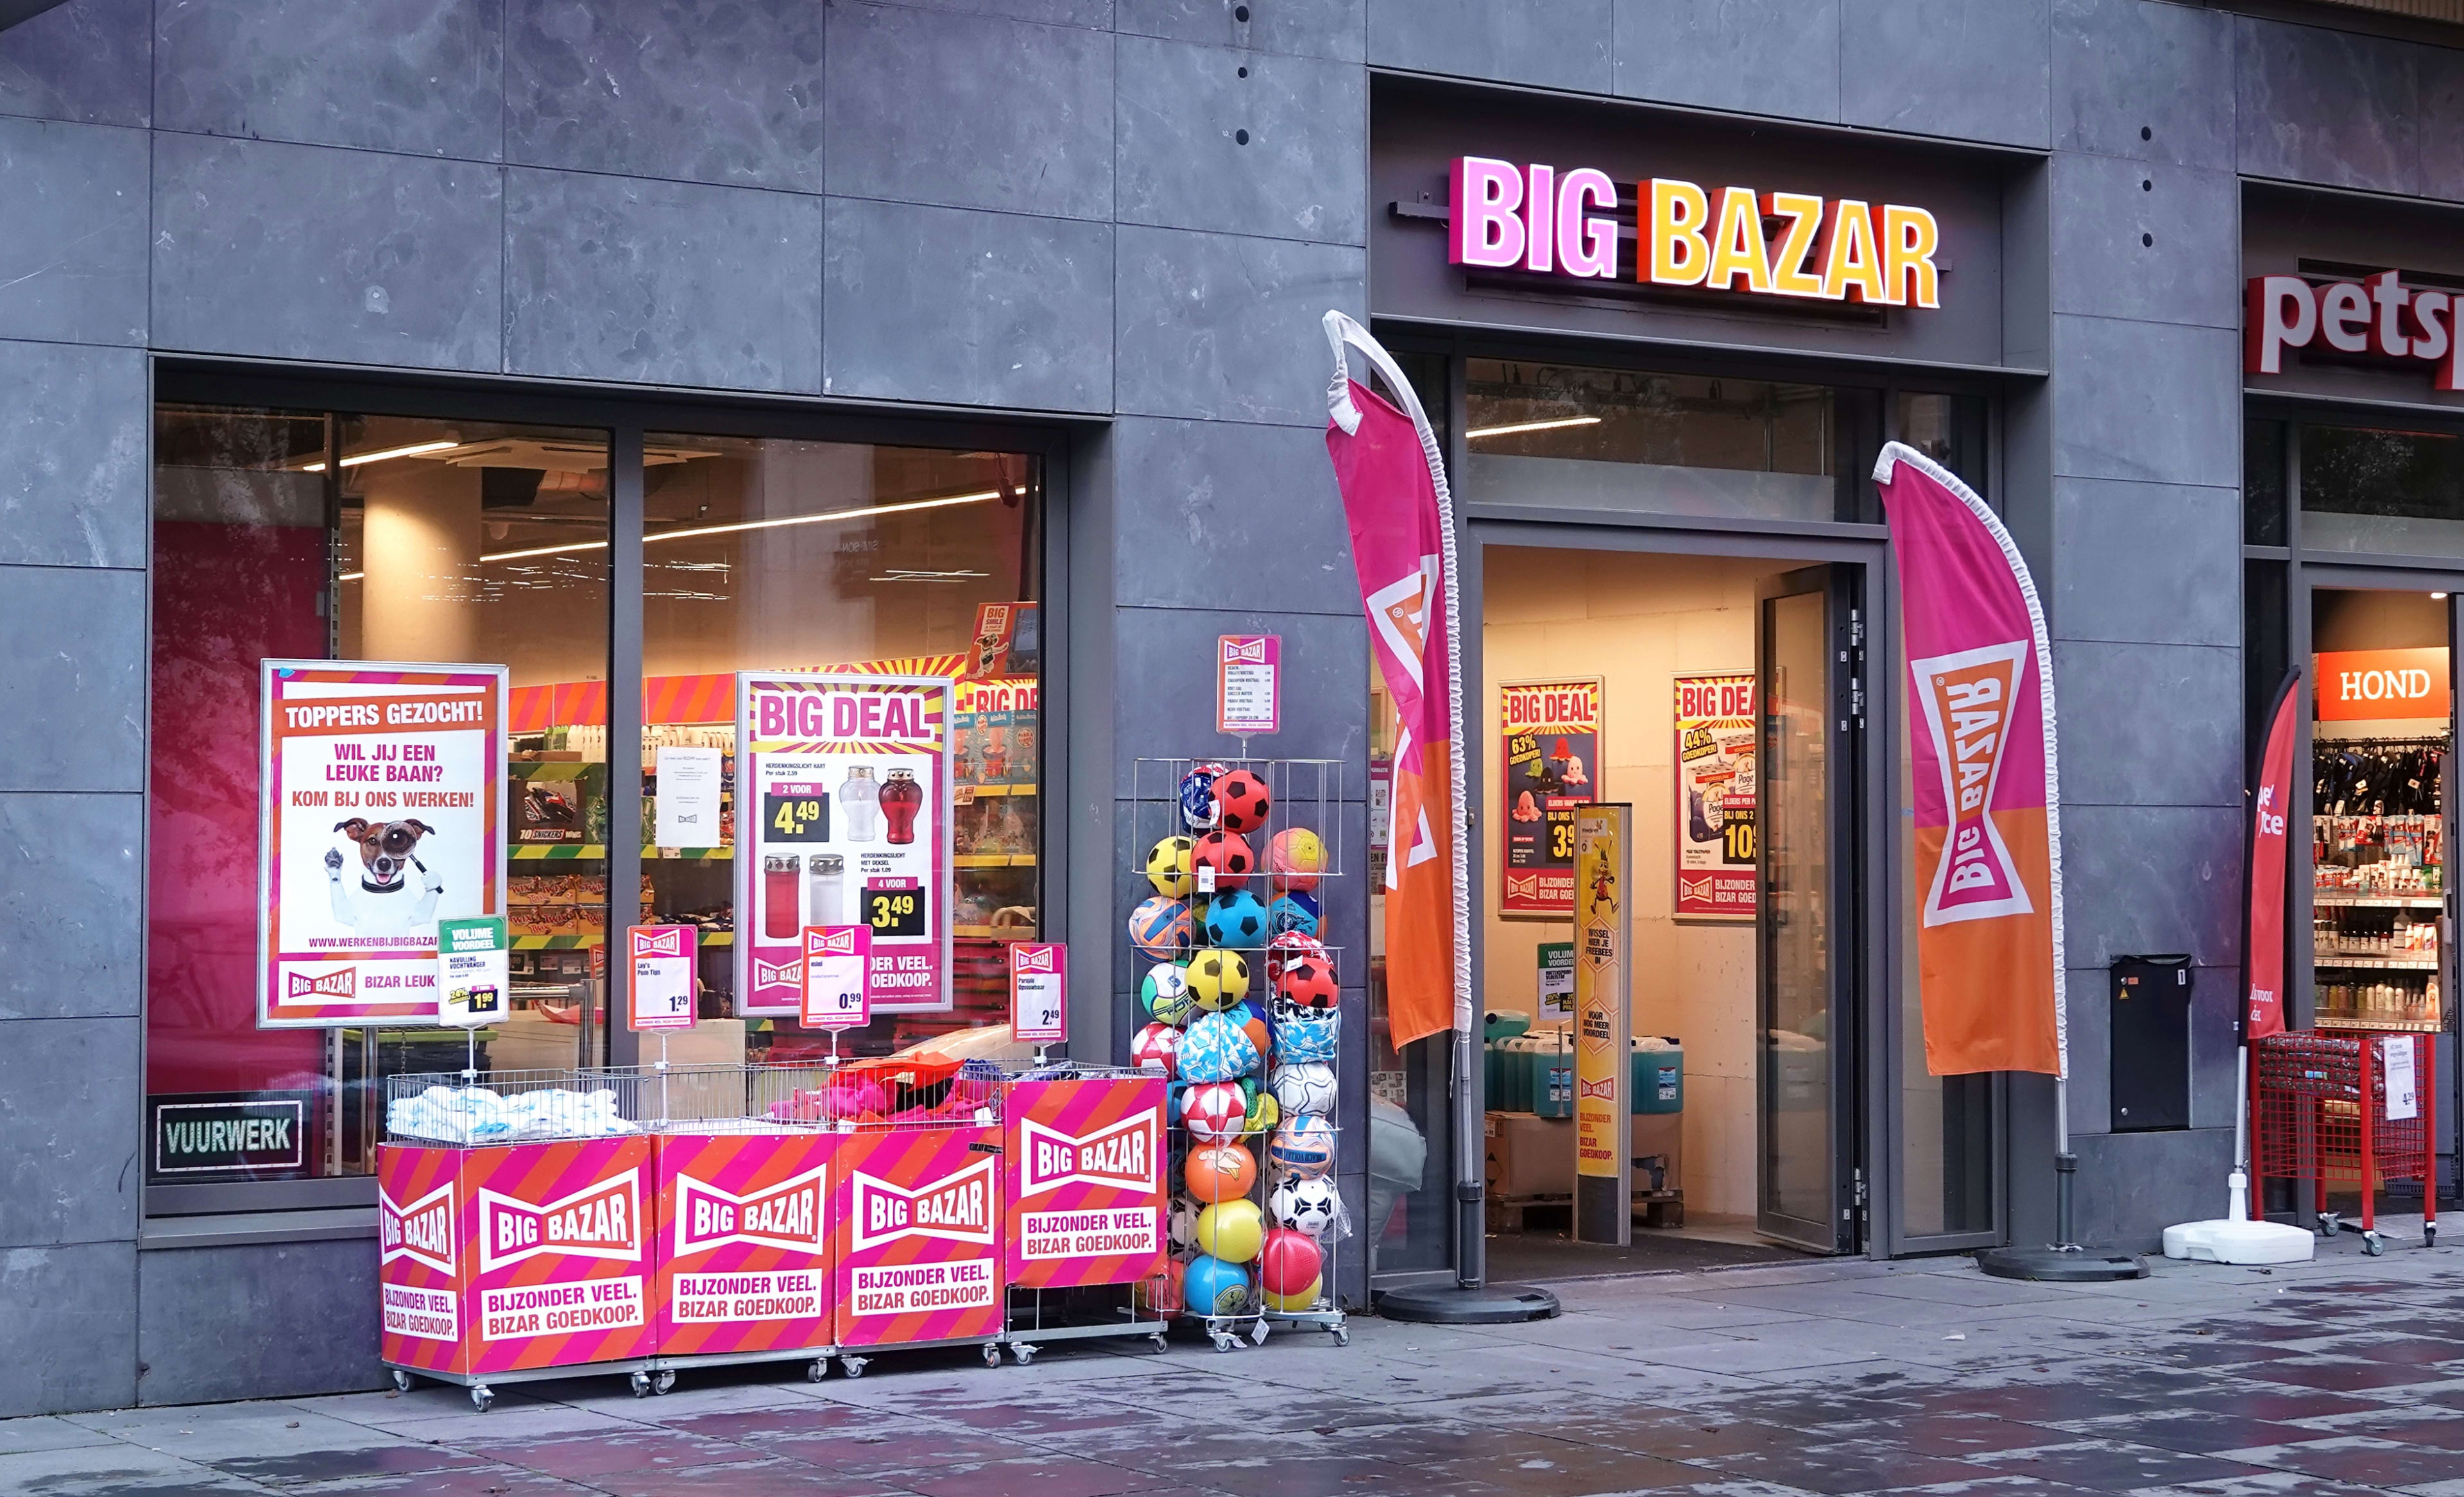 Geen doorstart voor Big Bazar, wel uitverkoop: 'Zullen daarbij kortingen geven' 